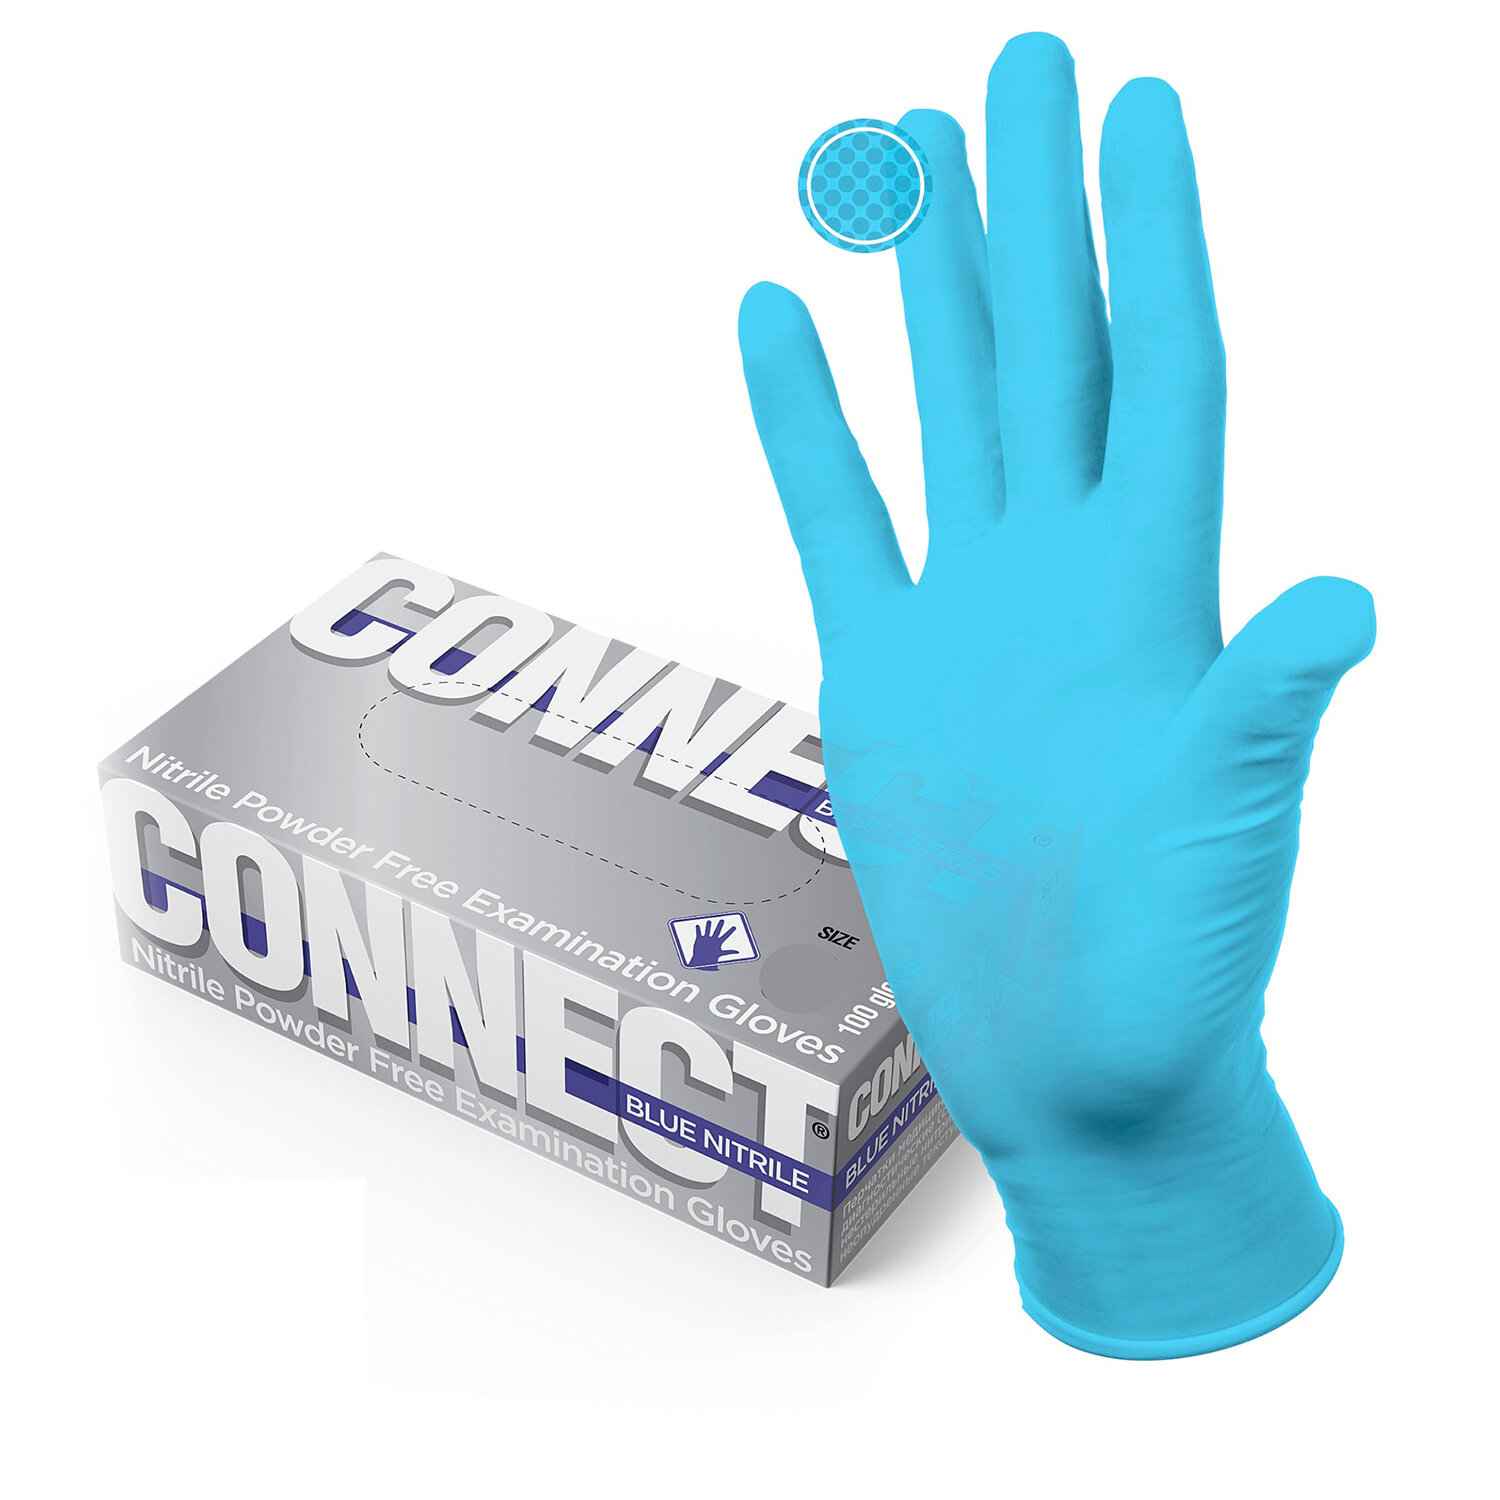 Перчатки CONNECT 631131, голубые, комплект 2 упаковки по 50 пар (100 штук/уп), размер L (большие)